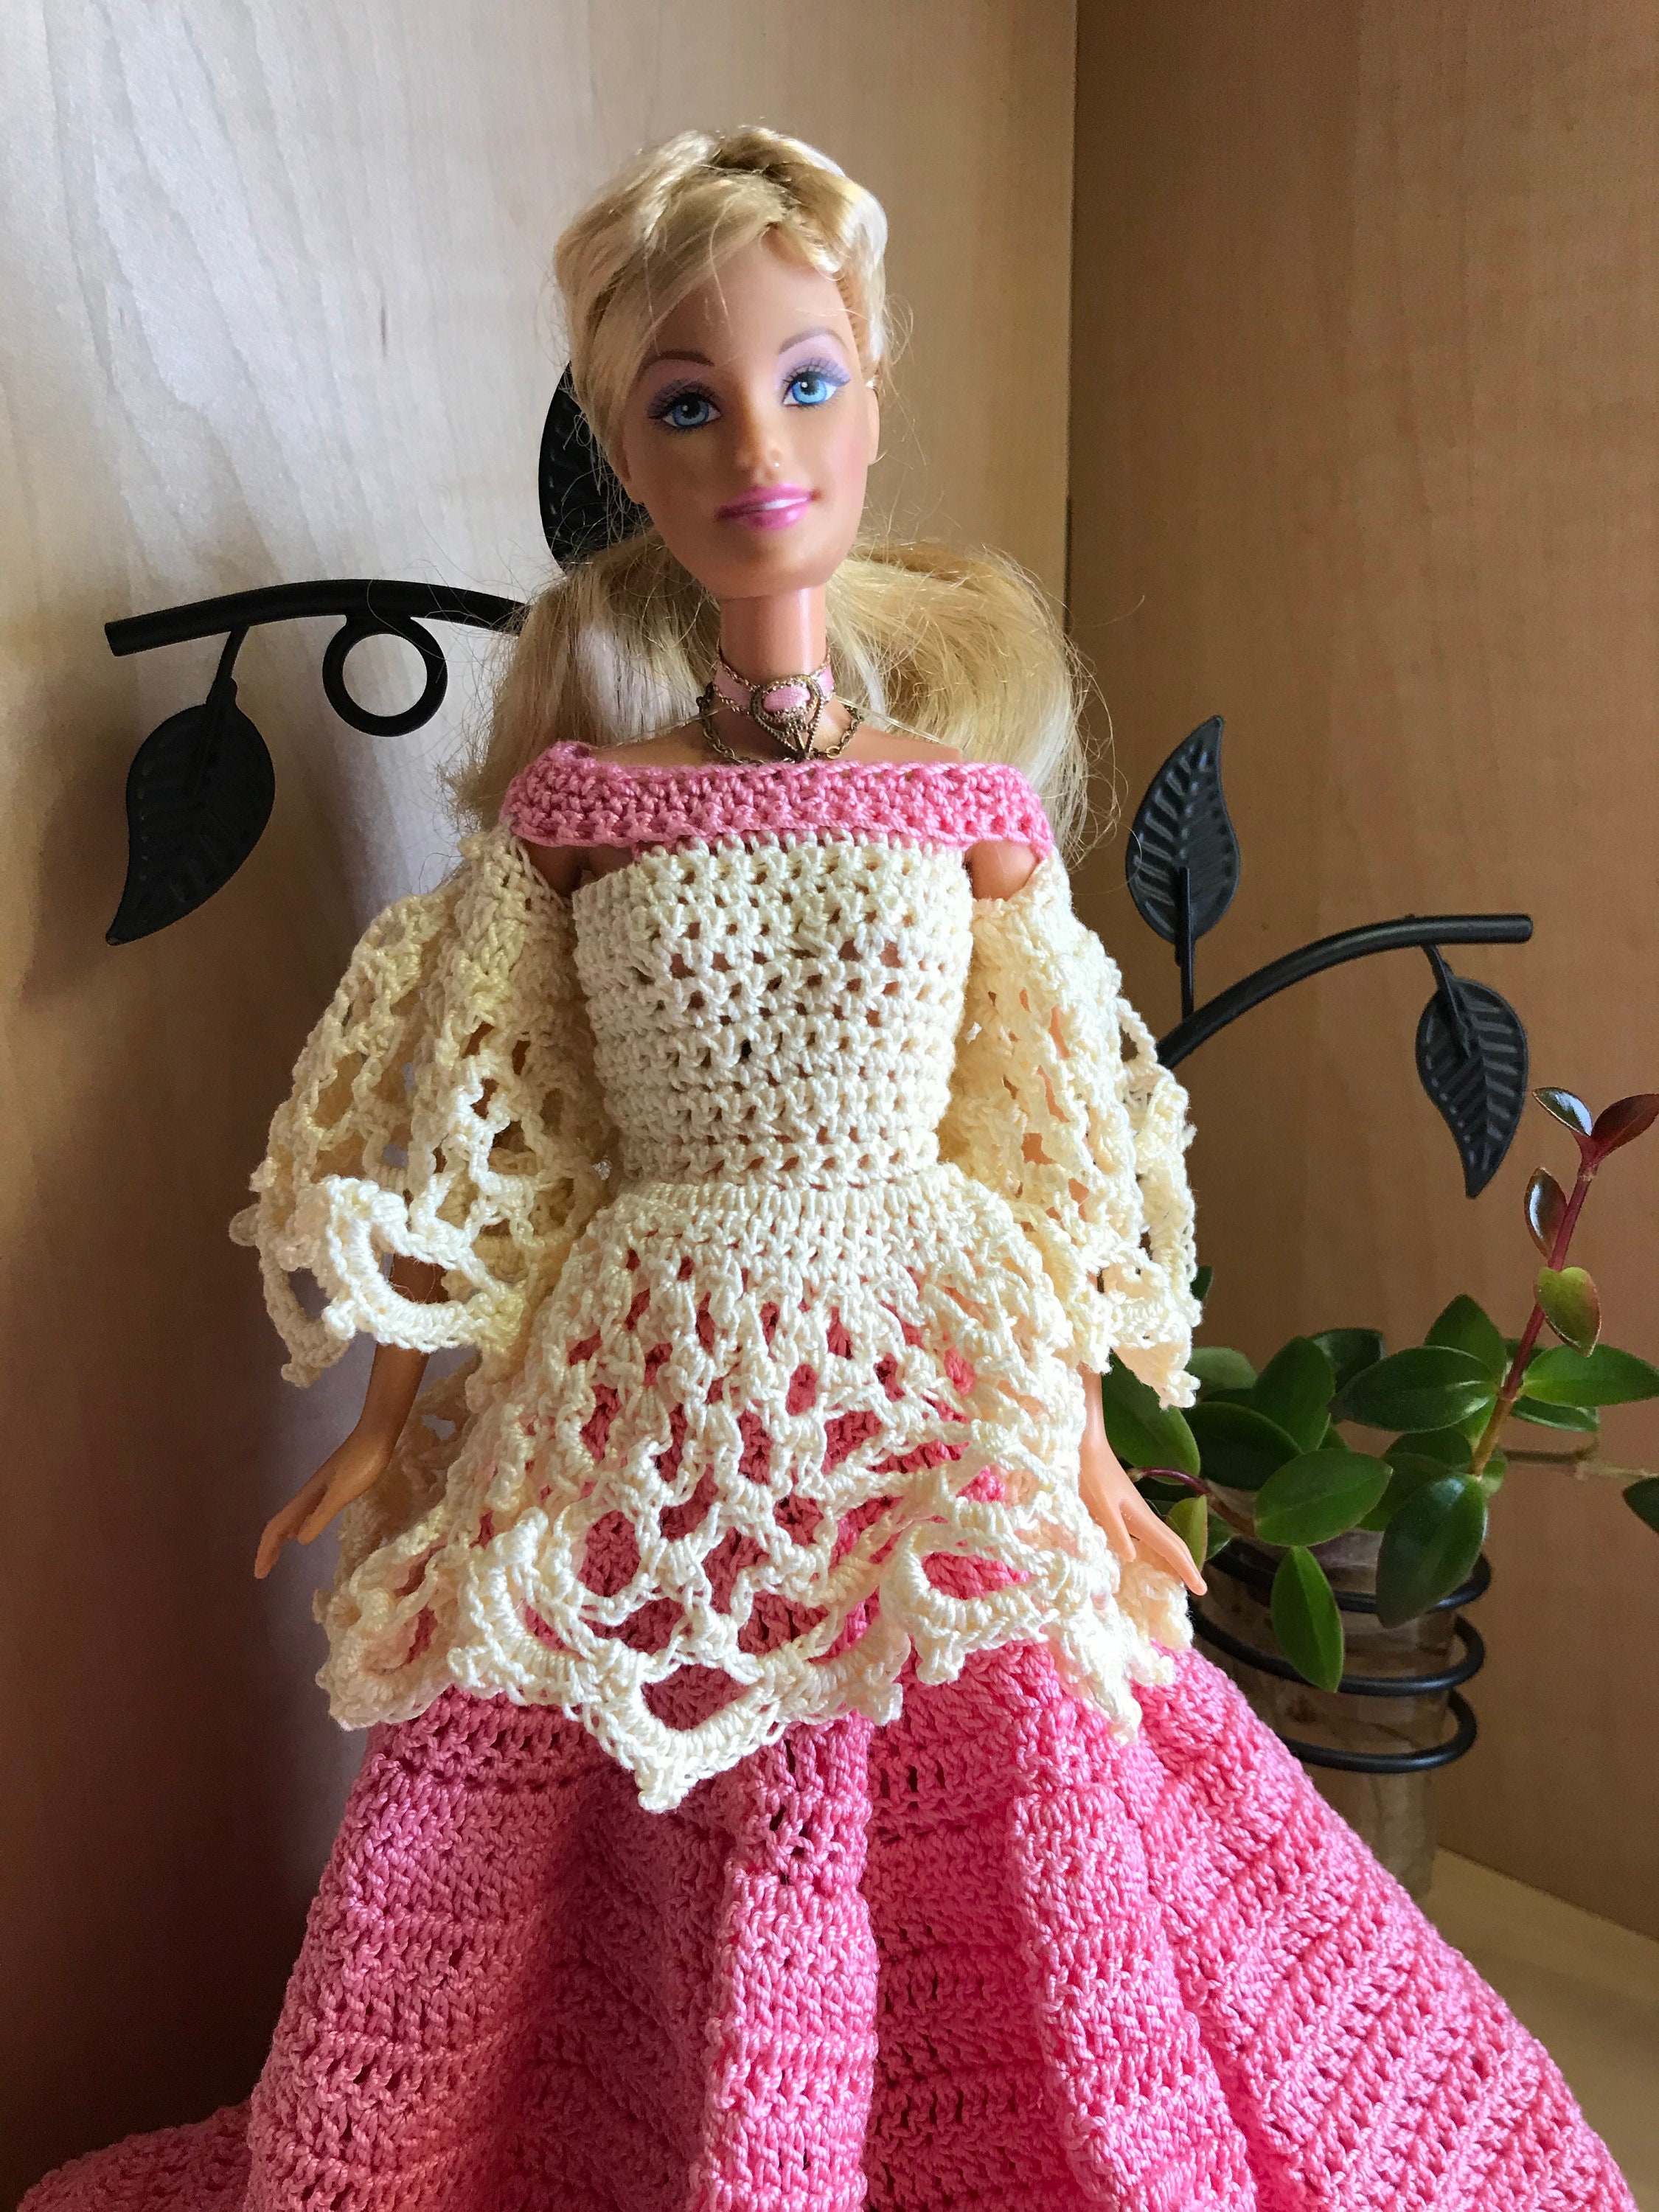 ROUPAS PARA BARBIE DE CROCHÊ  Crochet barbie clothes, Crochet doll dress,  Barbie clothes